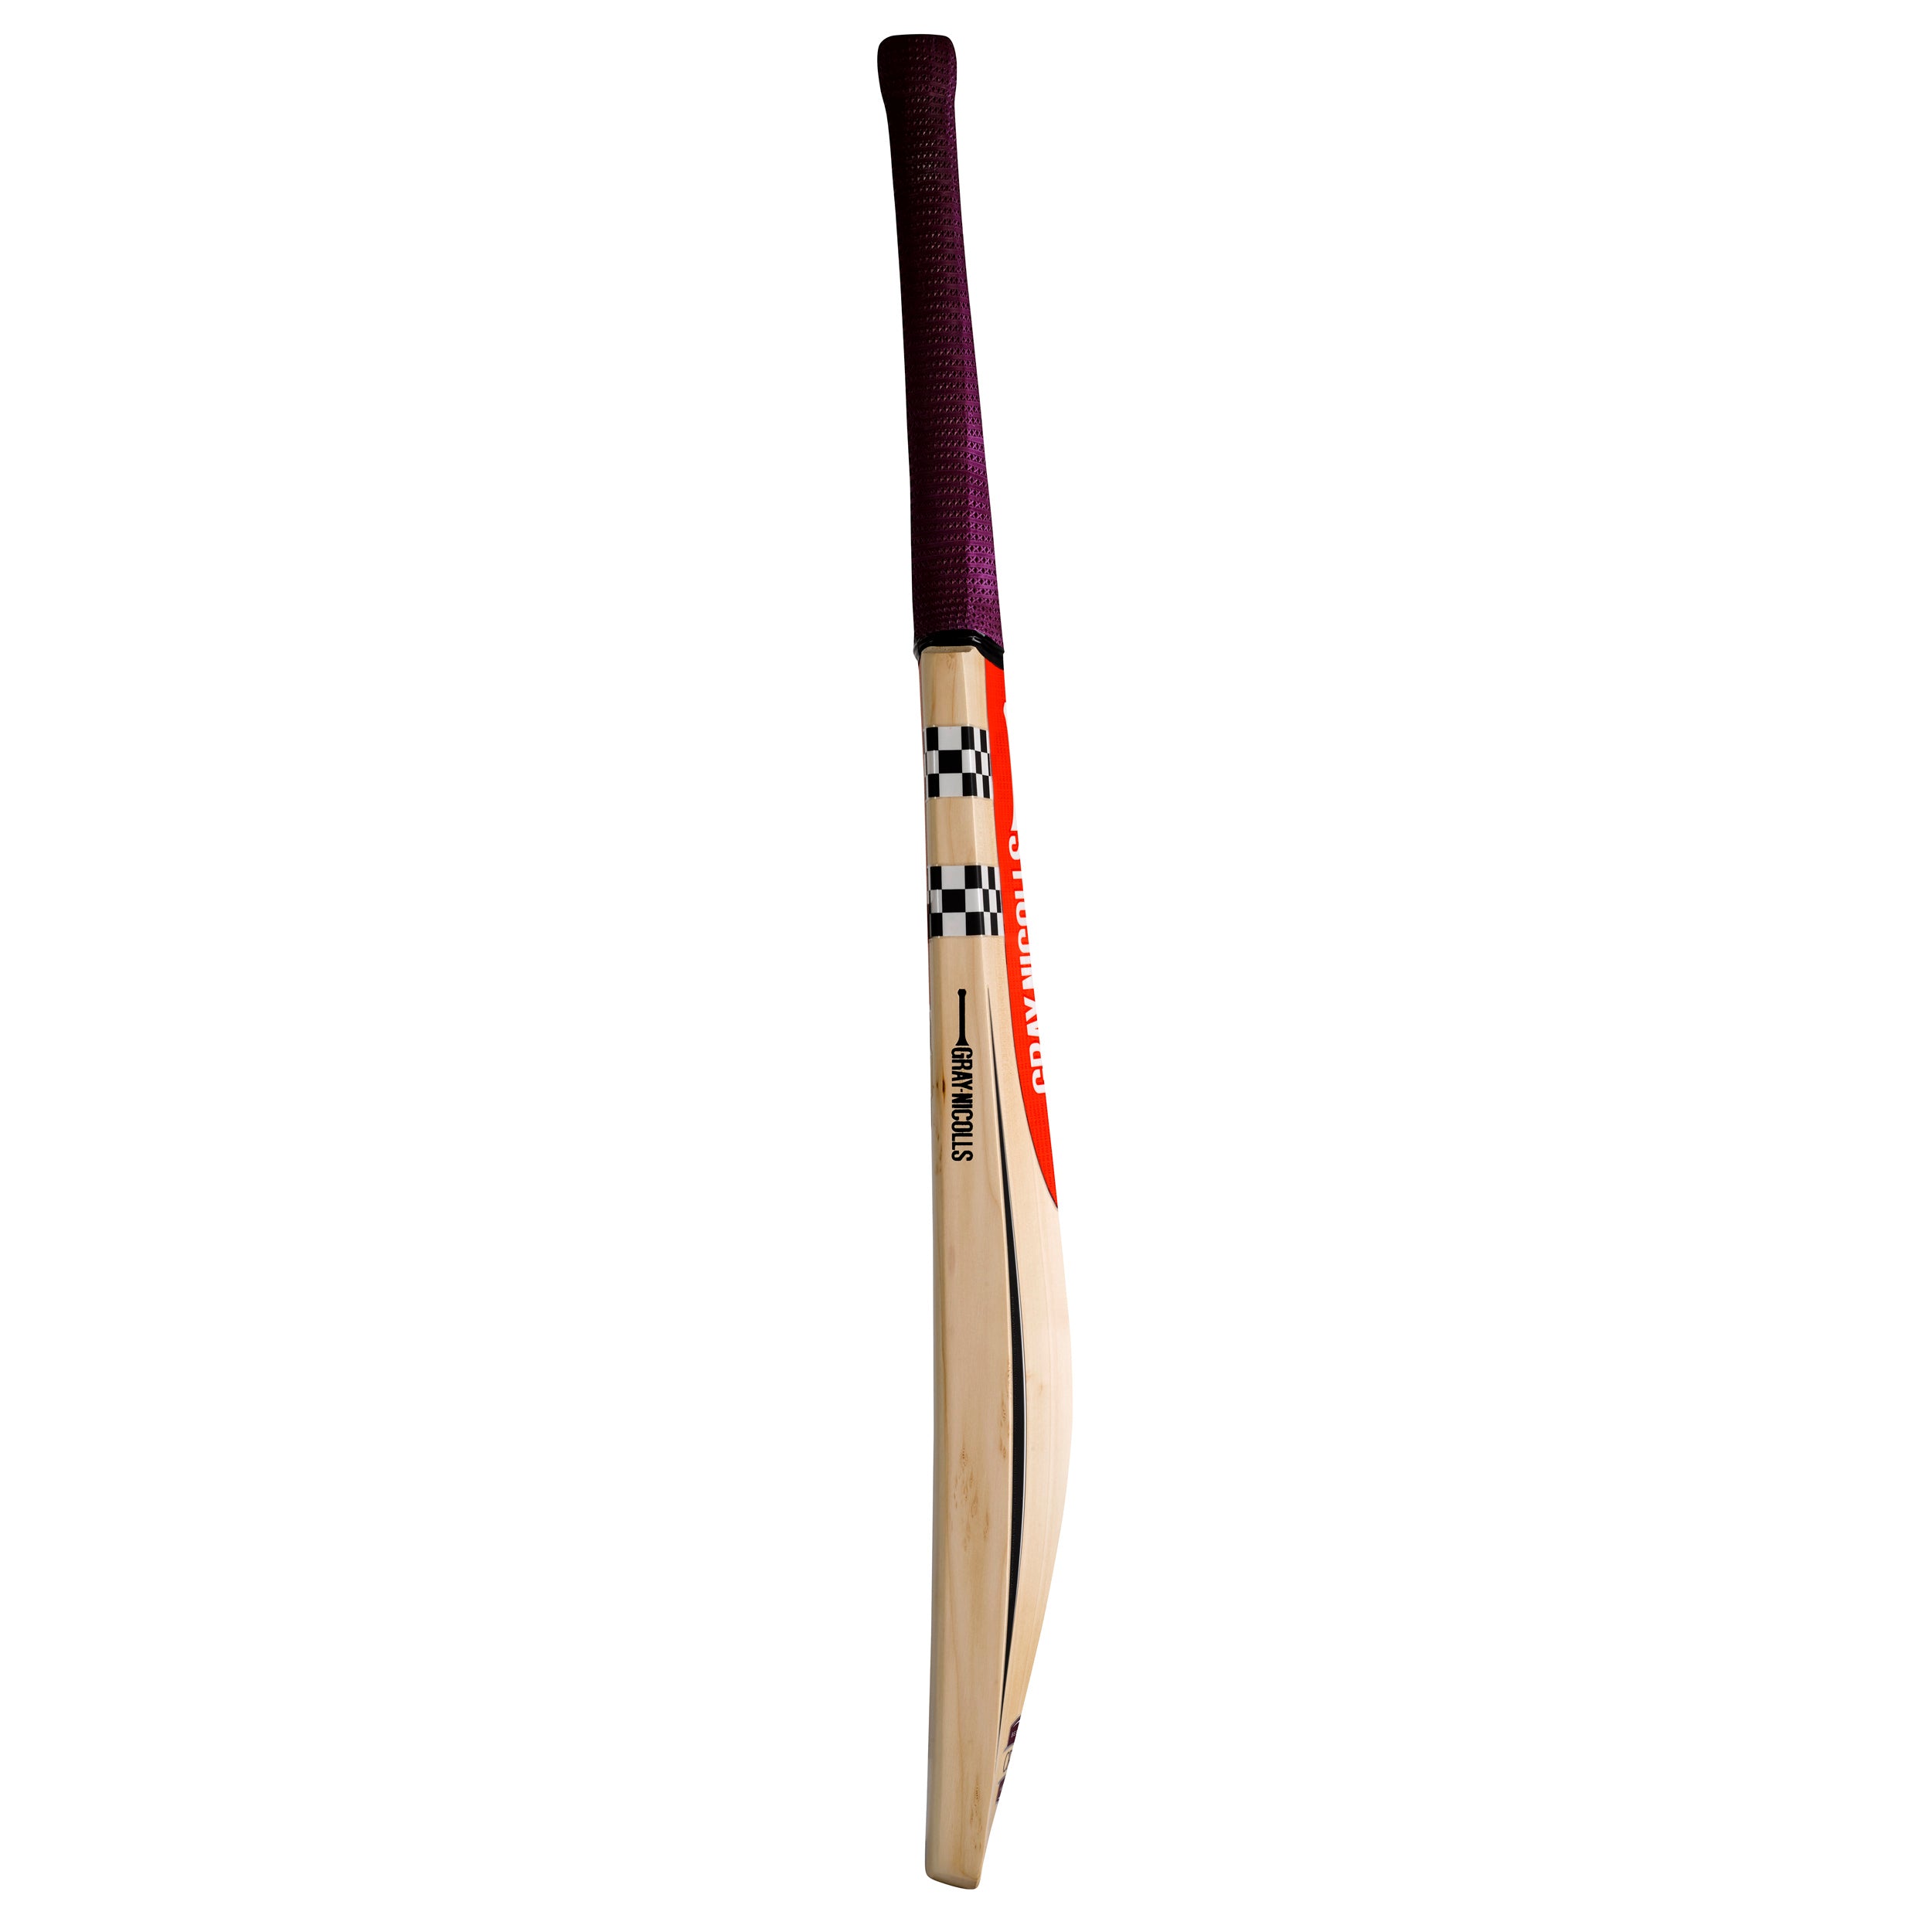 Gray Nicolls Crest Light Cricket Bat - Senior Short Blade